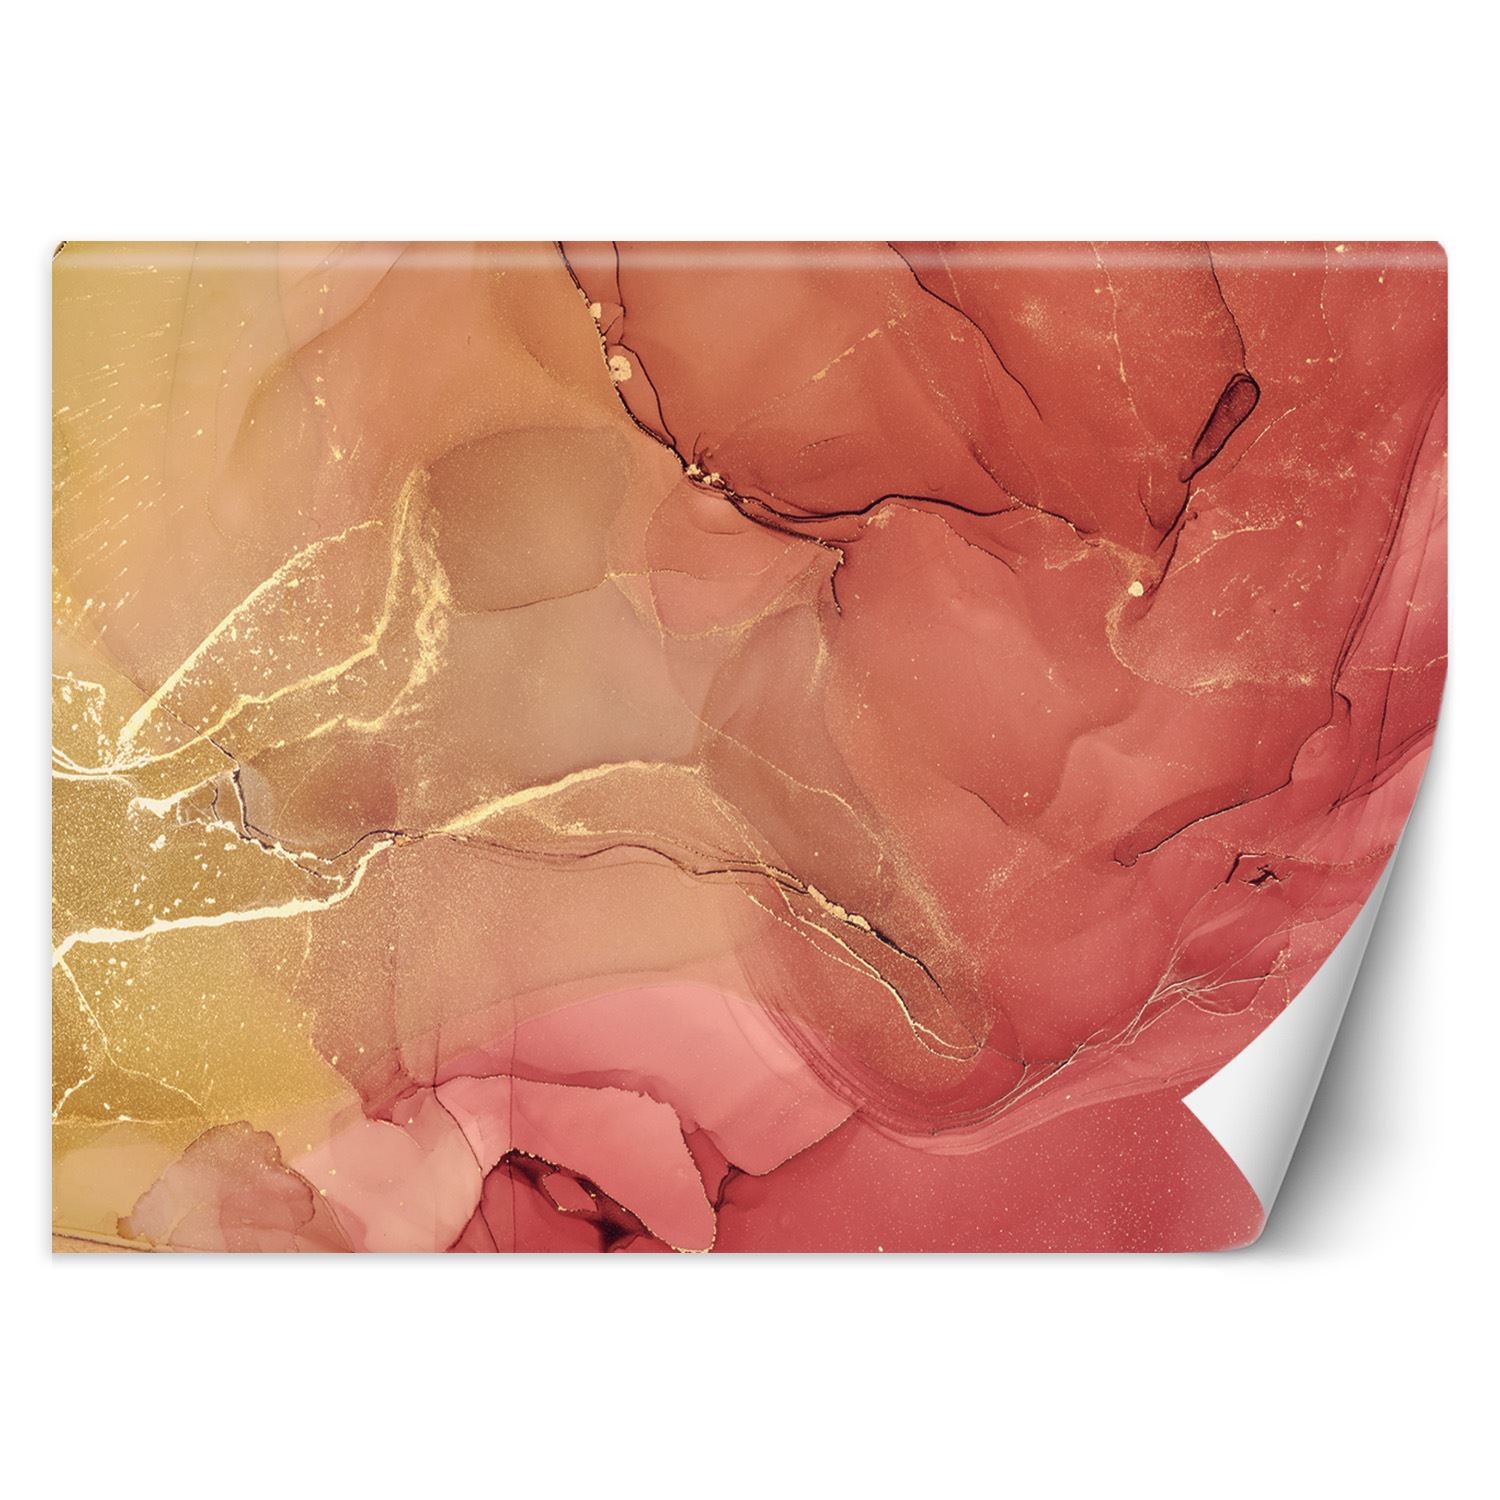 Trend24 – Behang – Abstract In Delicate Roze – Vliesbehang – Fotobehang 3D – Behang Woonkamer – 350x245x2 cm – Incl. behanglijm